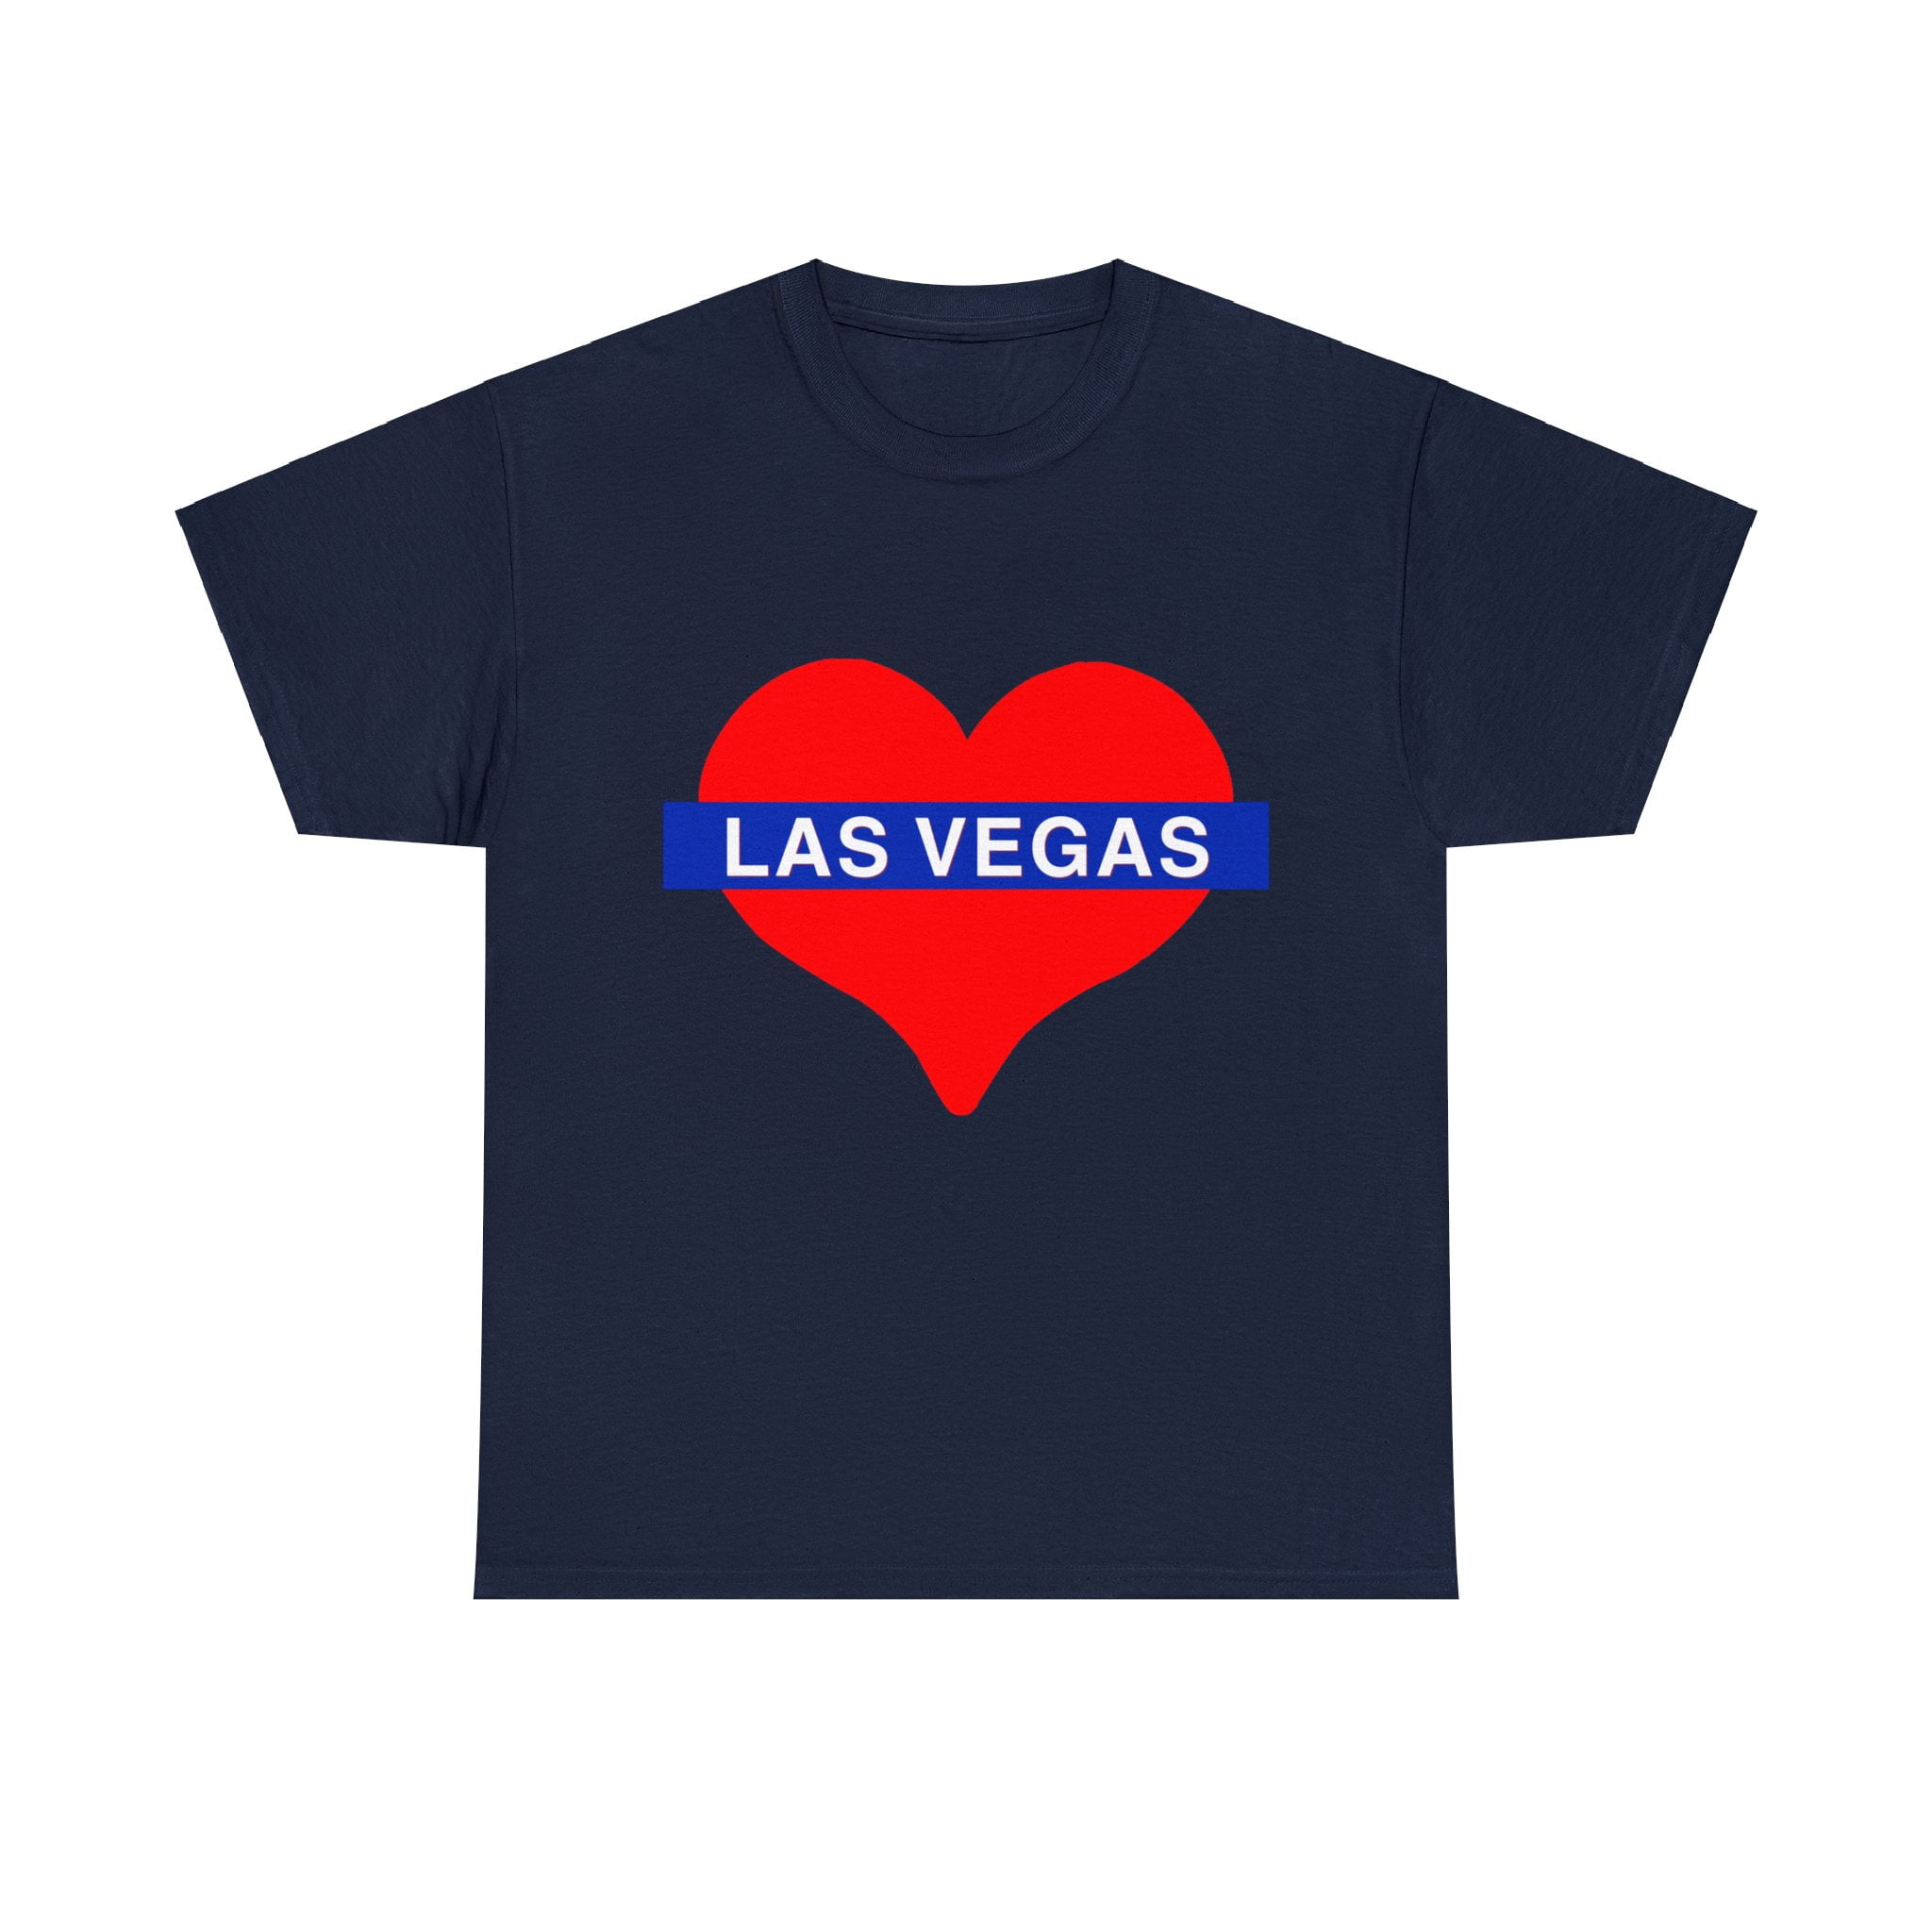 I Heart Las Vegas T-shirt - I Love Las Vegas Tee